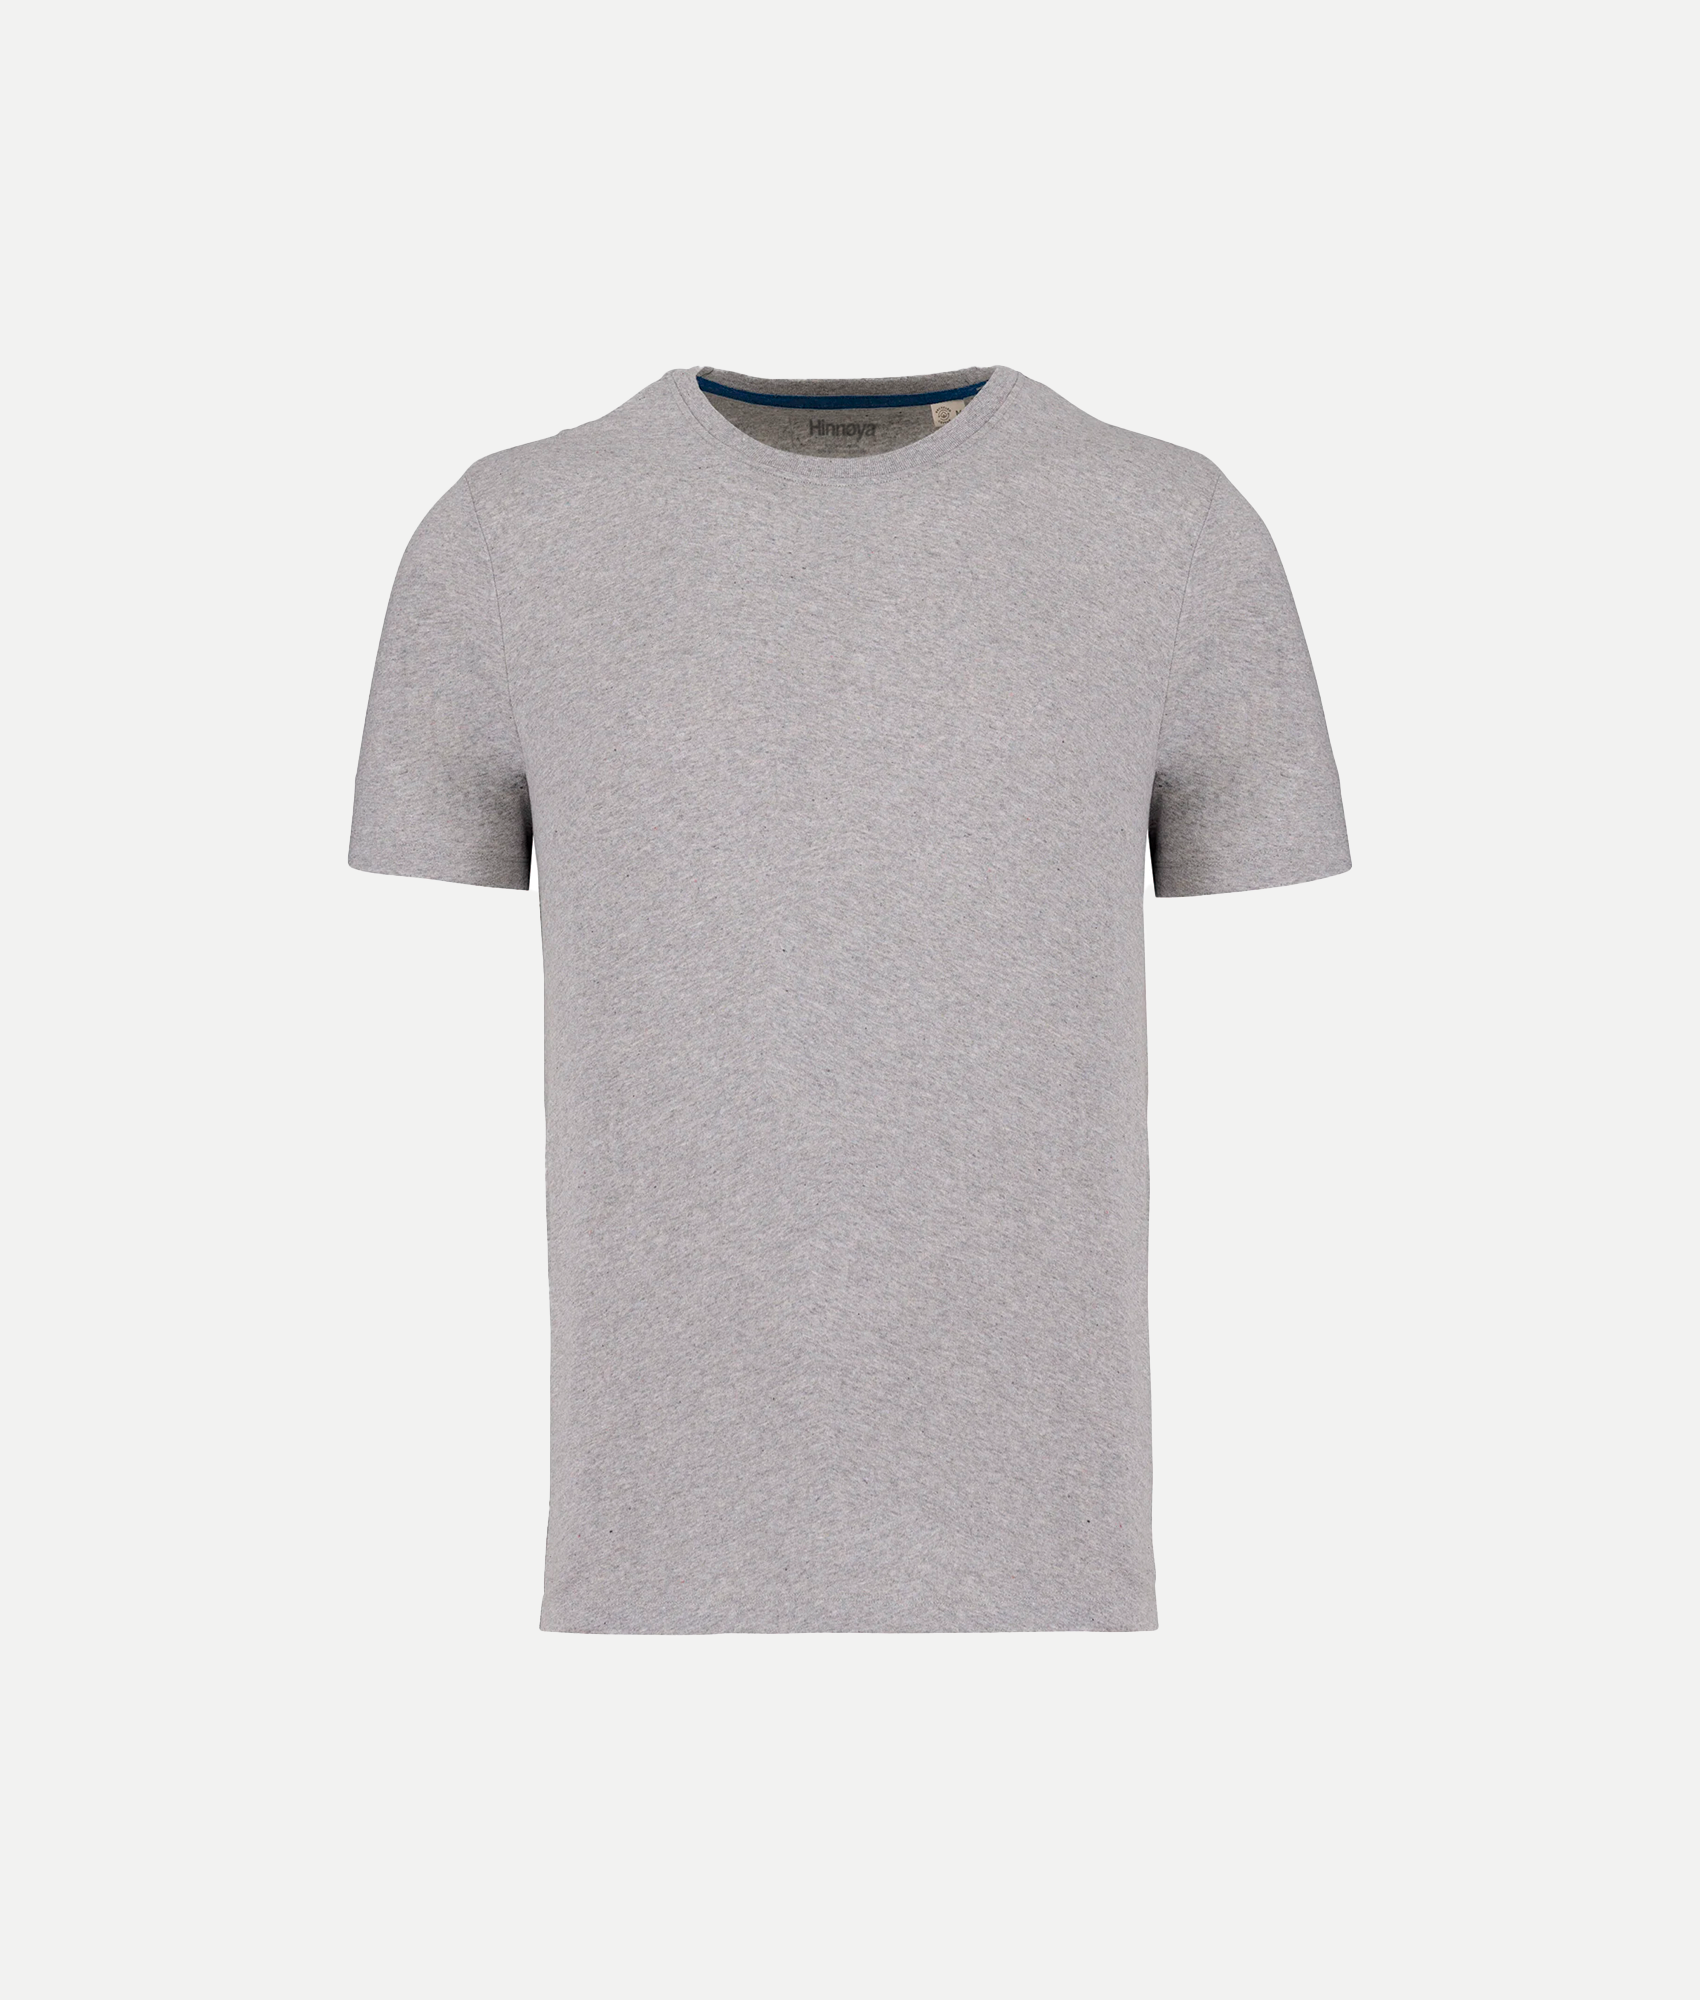 Hinnøya Recycled T-shirt - Oxford Gray